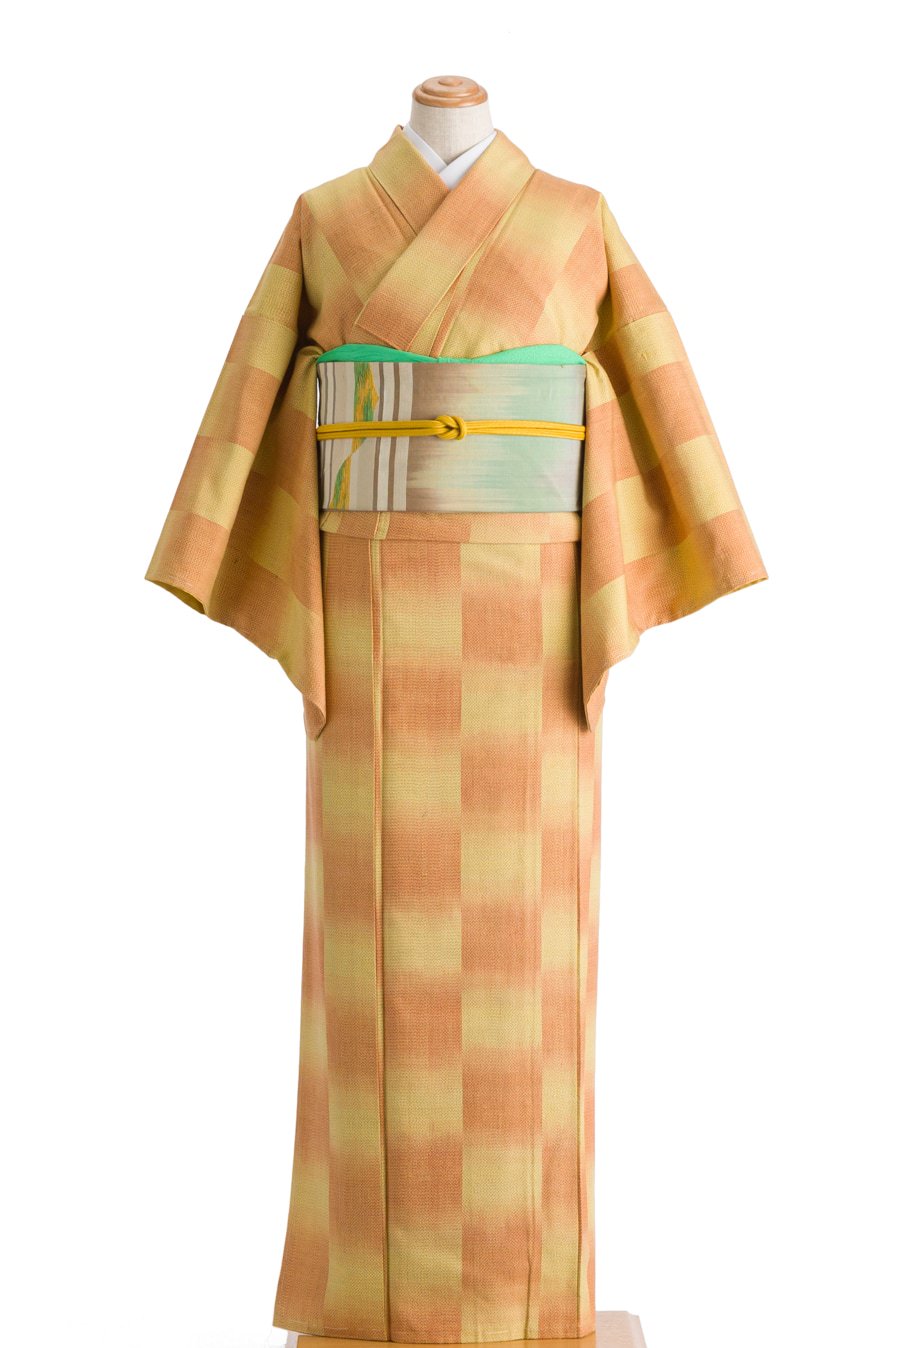 紬 黄色とオレンジの市松   からん::アンティーク着物・リサイクル着物